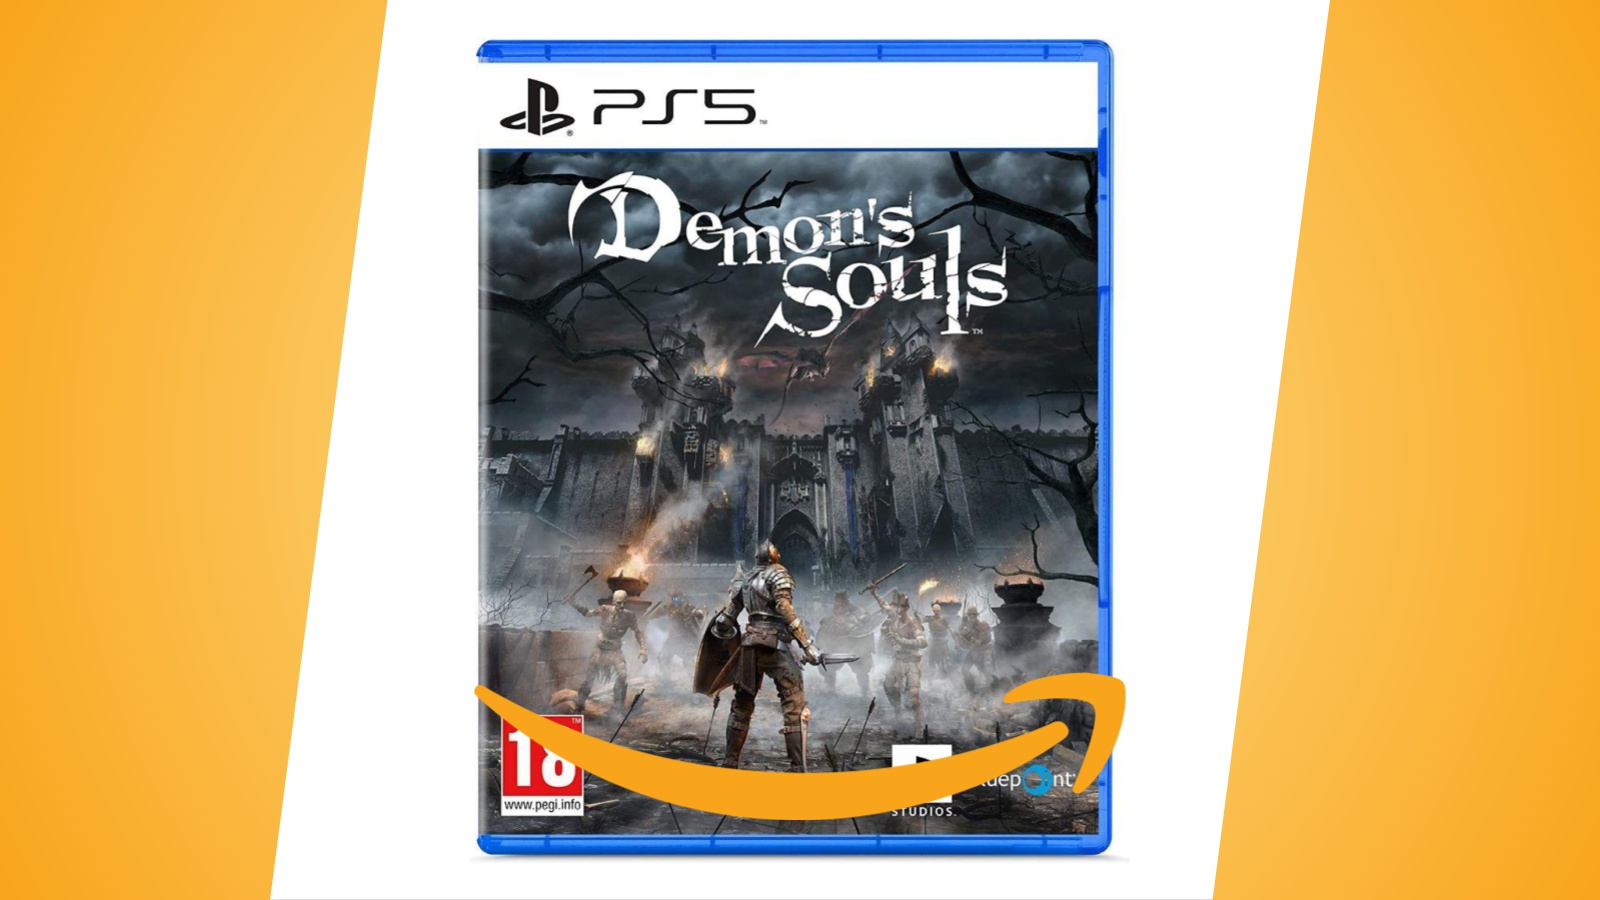 Offerte Amazon: Demon's Souls per PS5 è in forte sconto, al miglior prezzo degli ultimi mesi